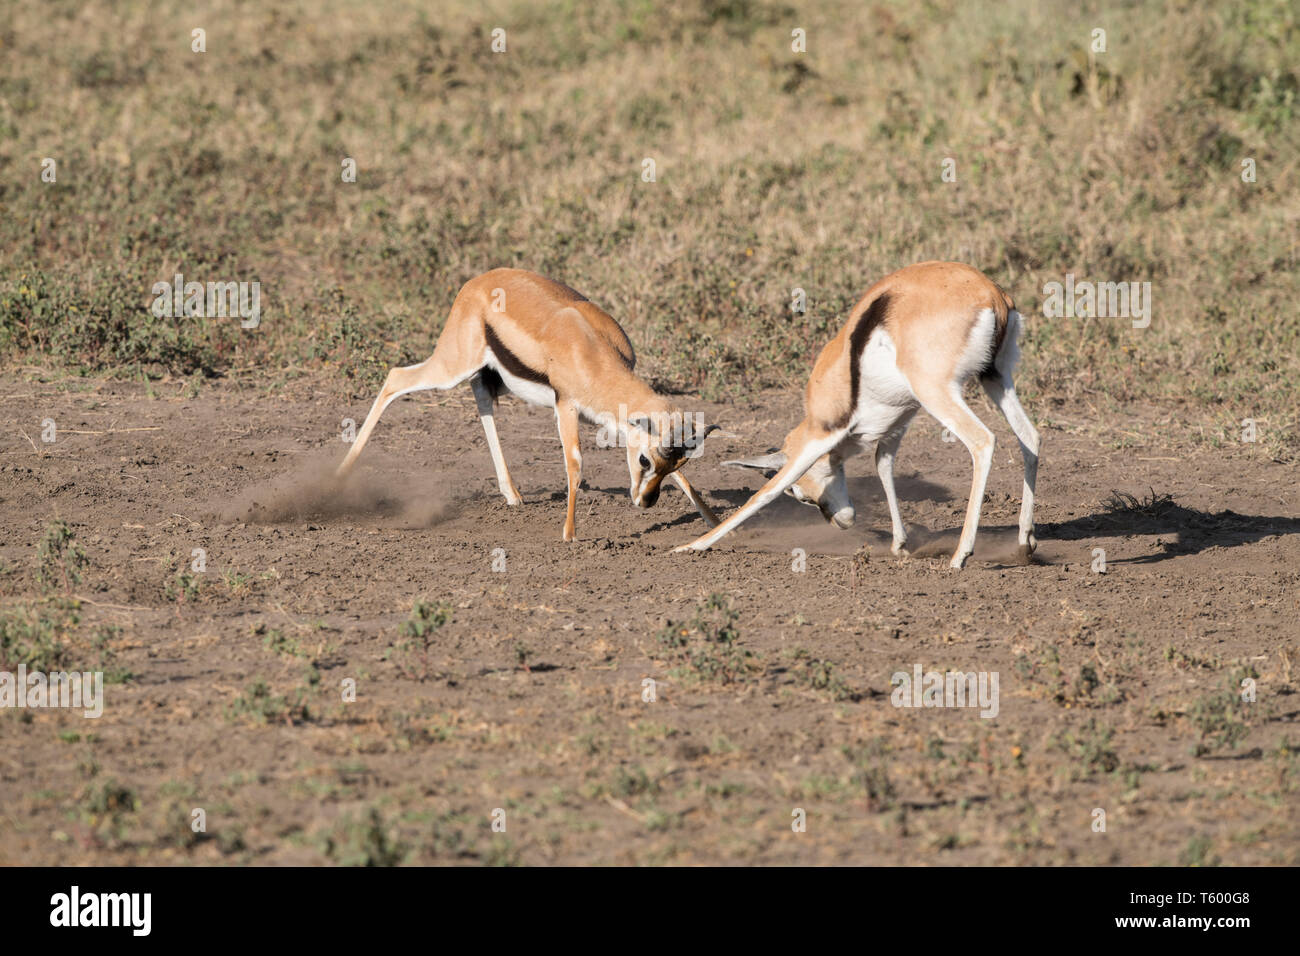 Thomsons gazelles sparring, Tanzania Stock Photo